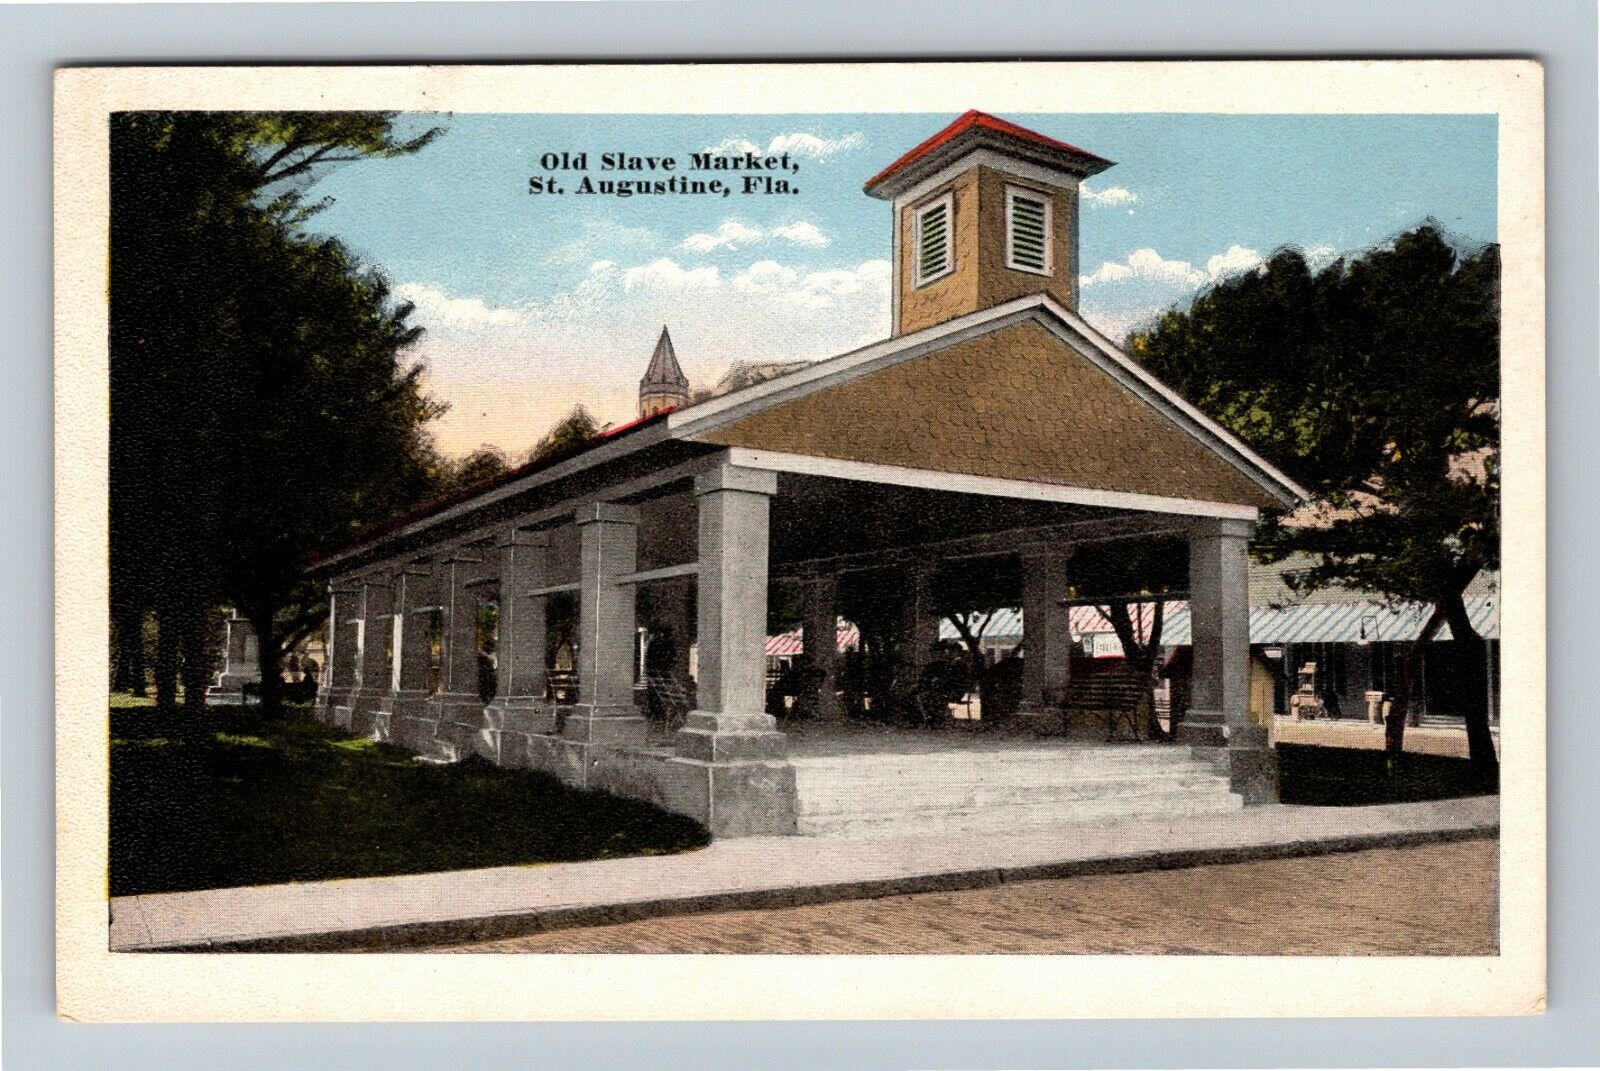 St Augustine FL, Old Slave Market, Florida Vintage Postcard